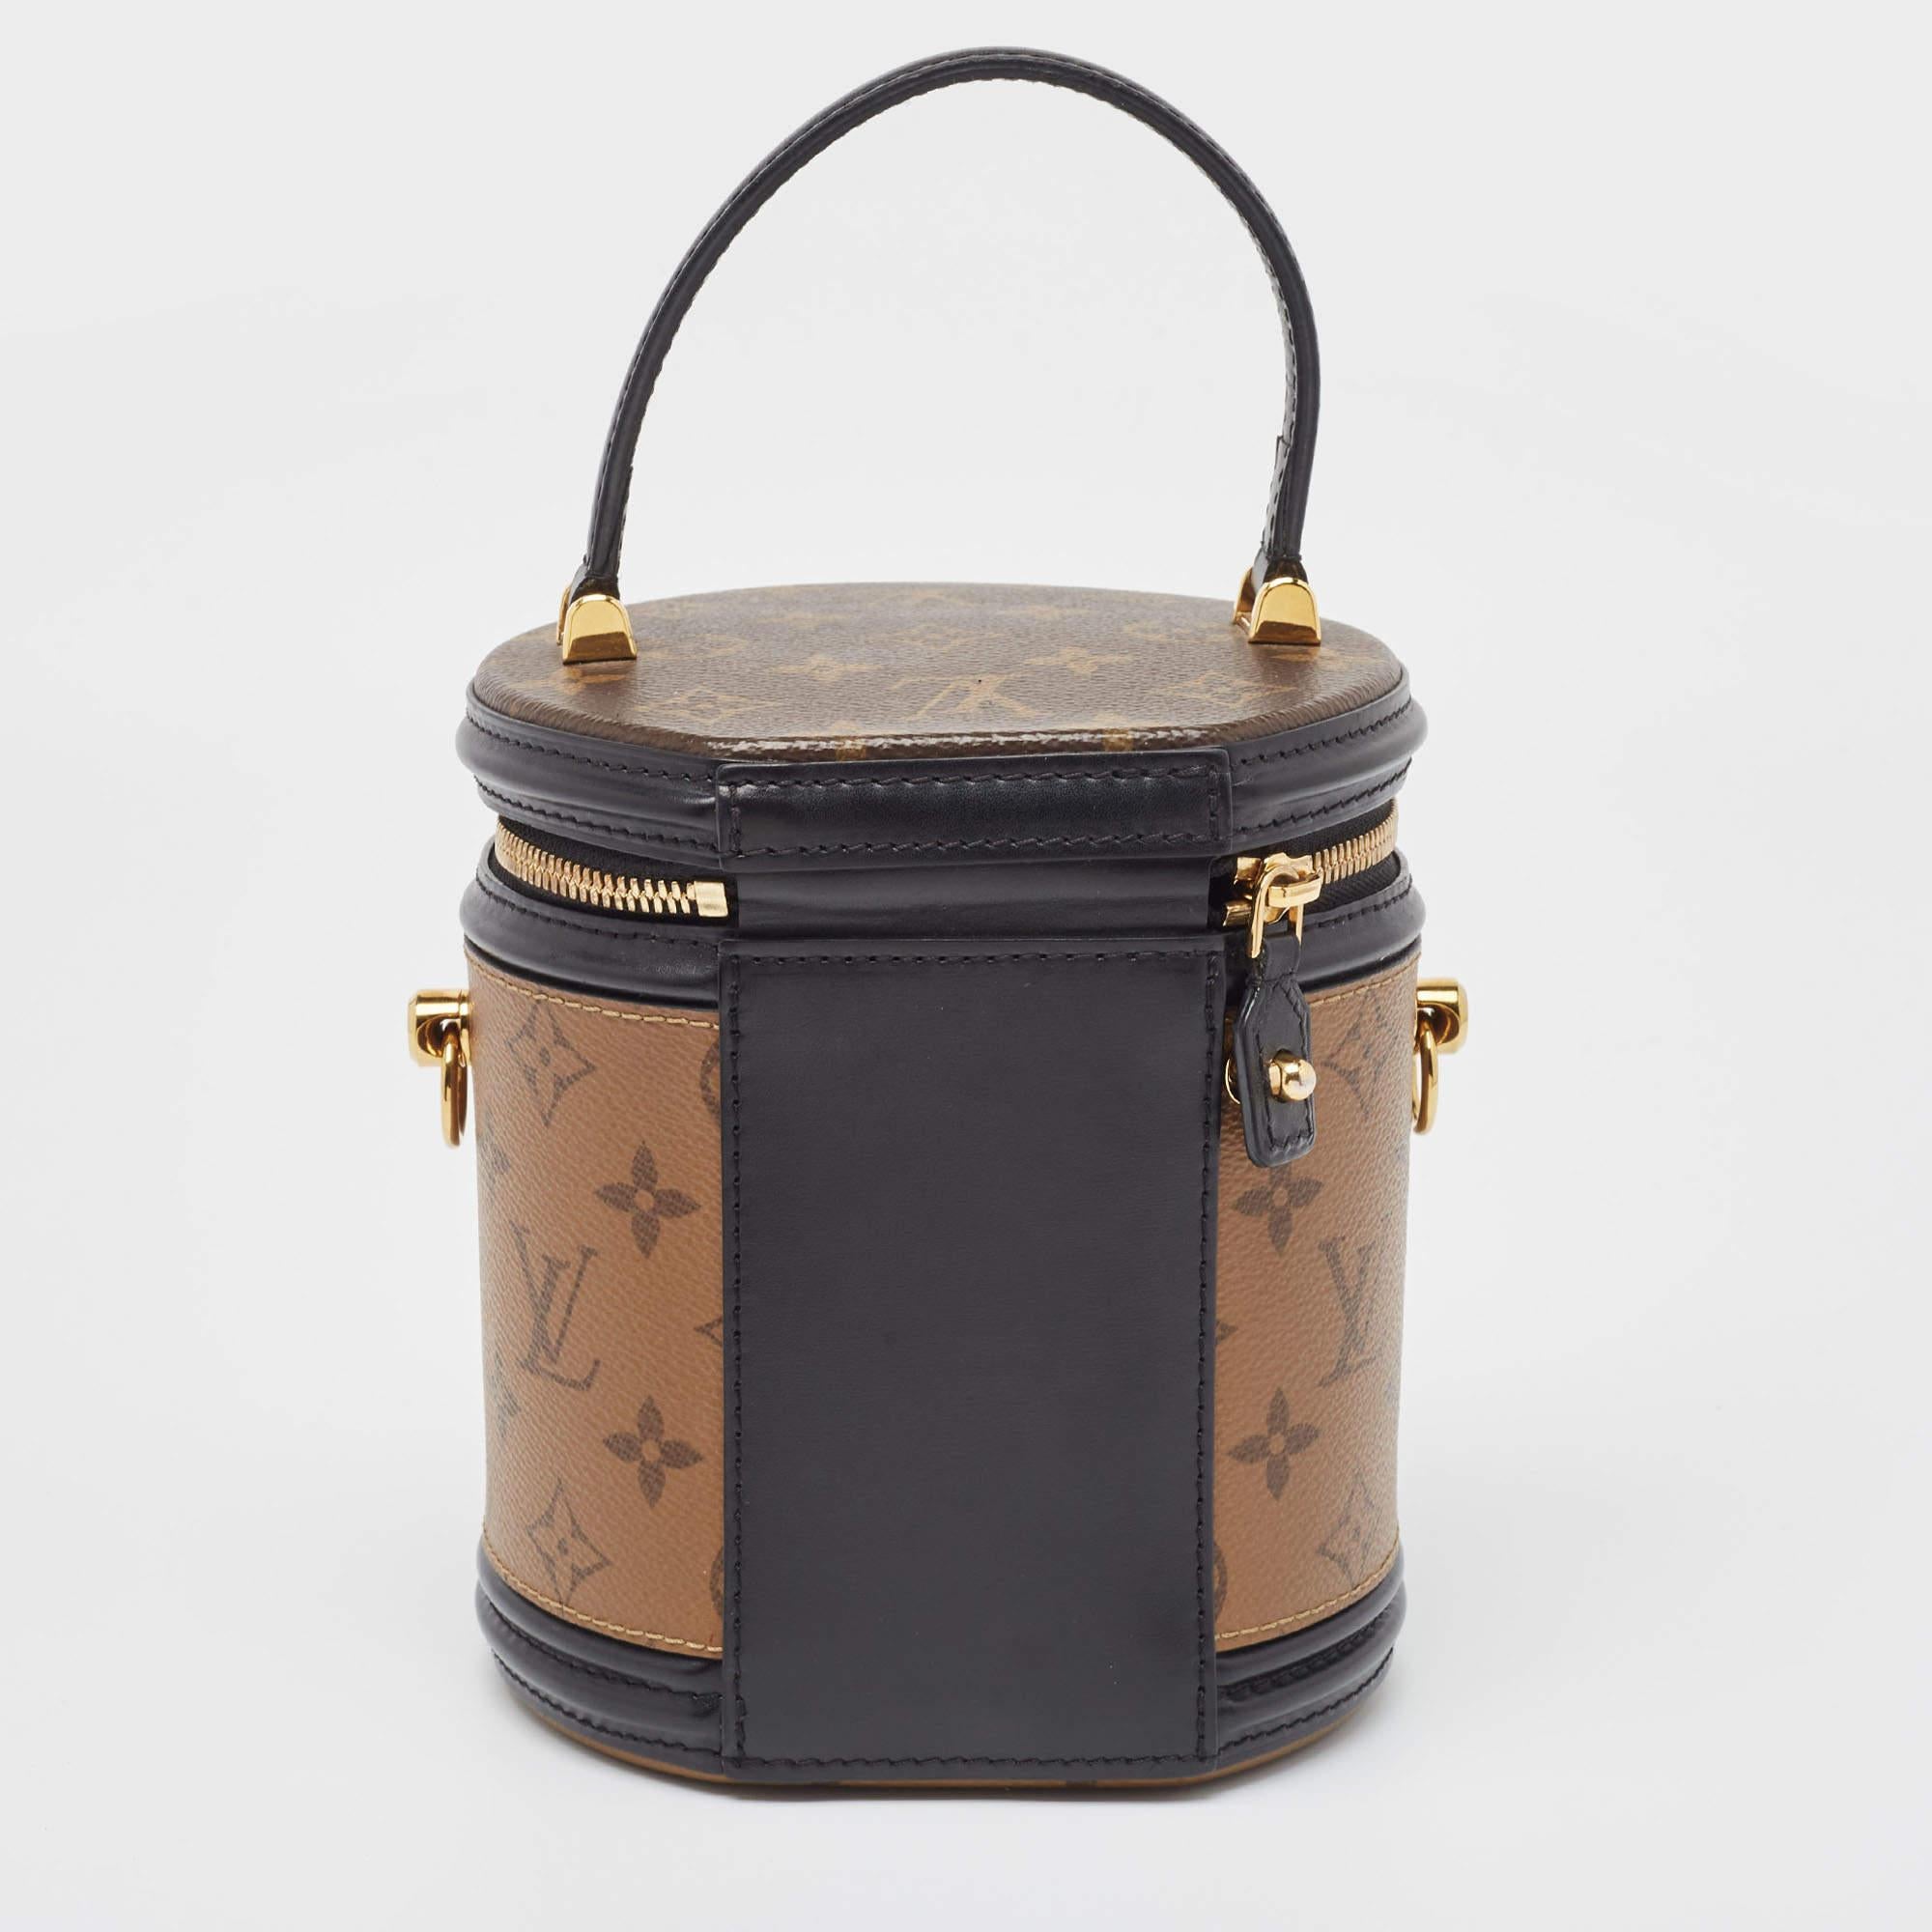 Les créations de Louis Vuitton sont populaires en raison de leur style élevé et de leur fonctionnalité. Ce sac Cannes, comme tous les autres sacs à main, est durable et élégant. D'une finition soignée, le sac est conçu pour offrir une expérience